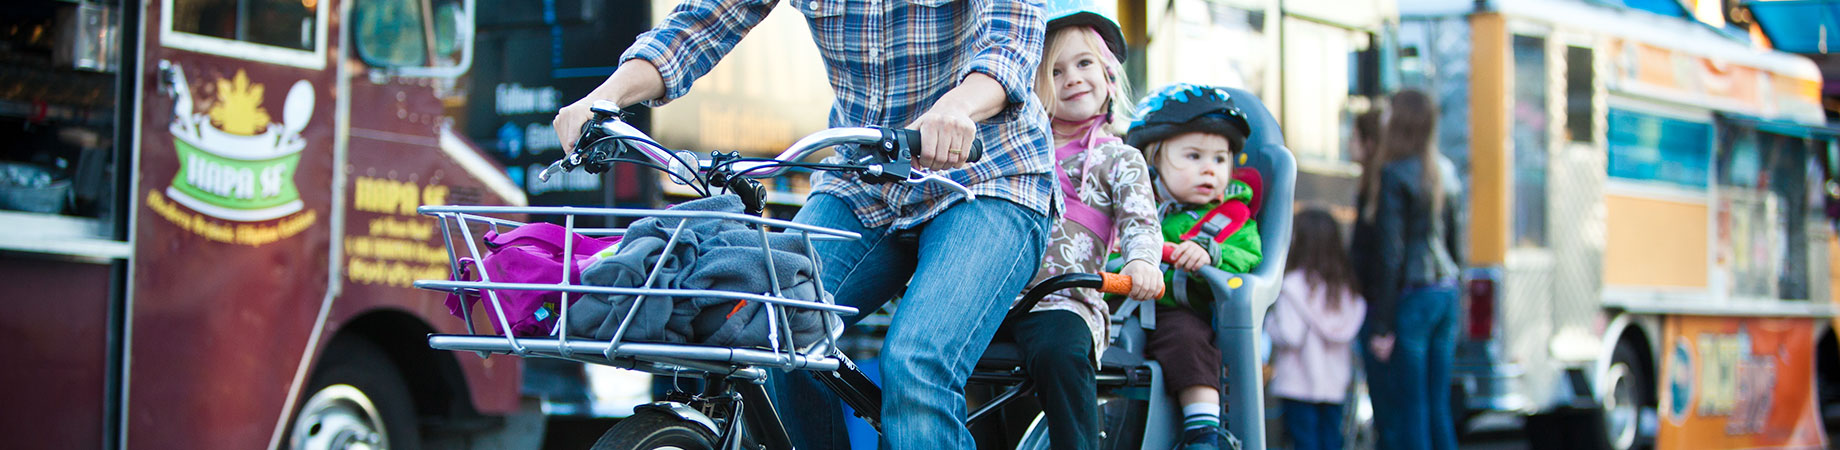 Yuba Cargo Bike for Carrying Kids FAQ